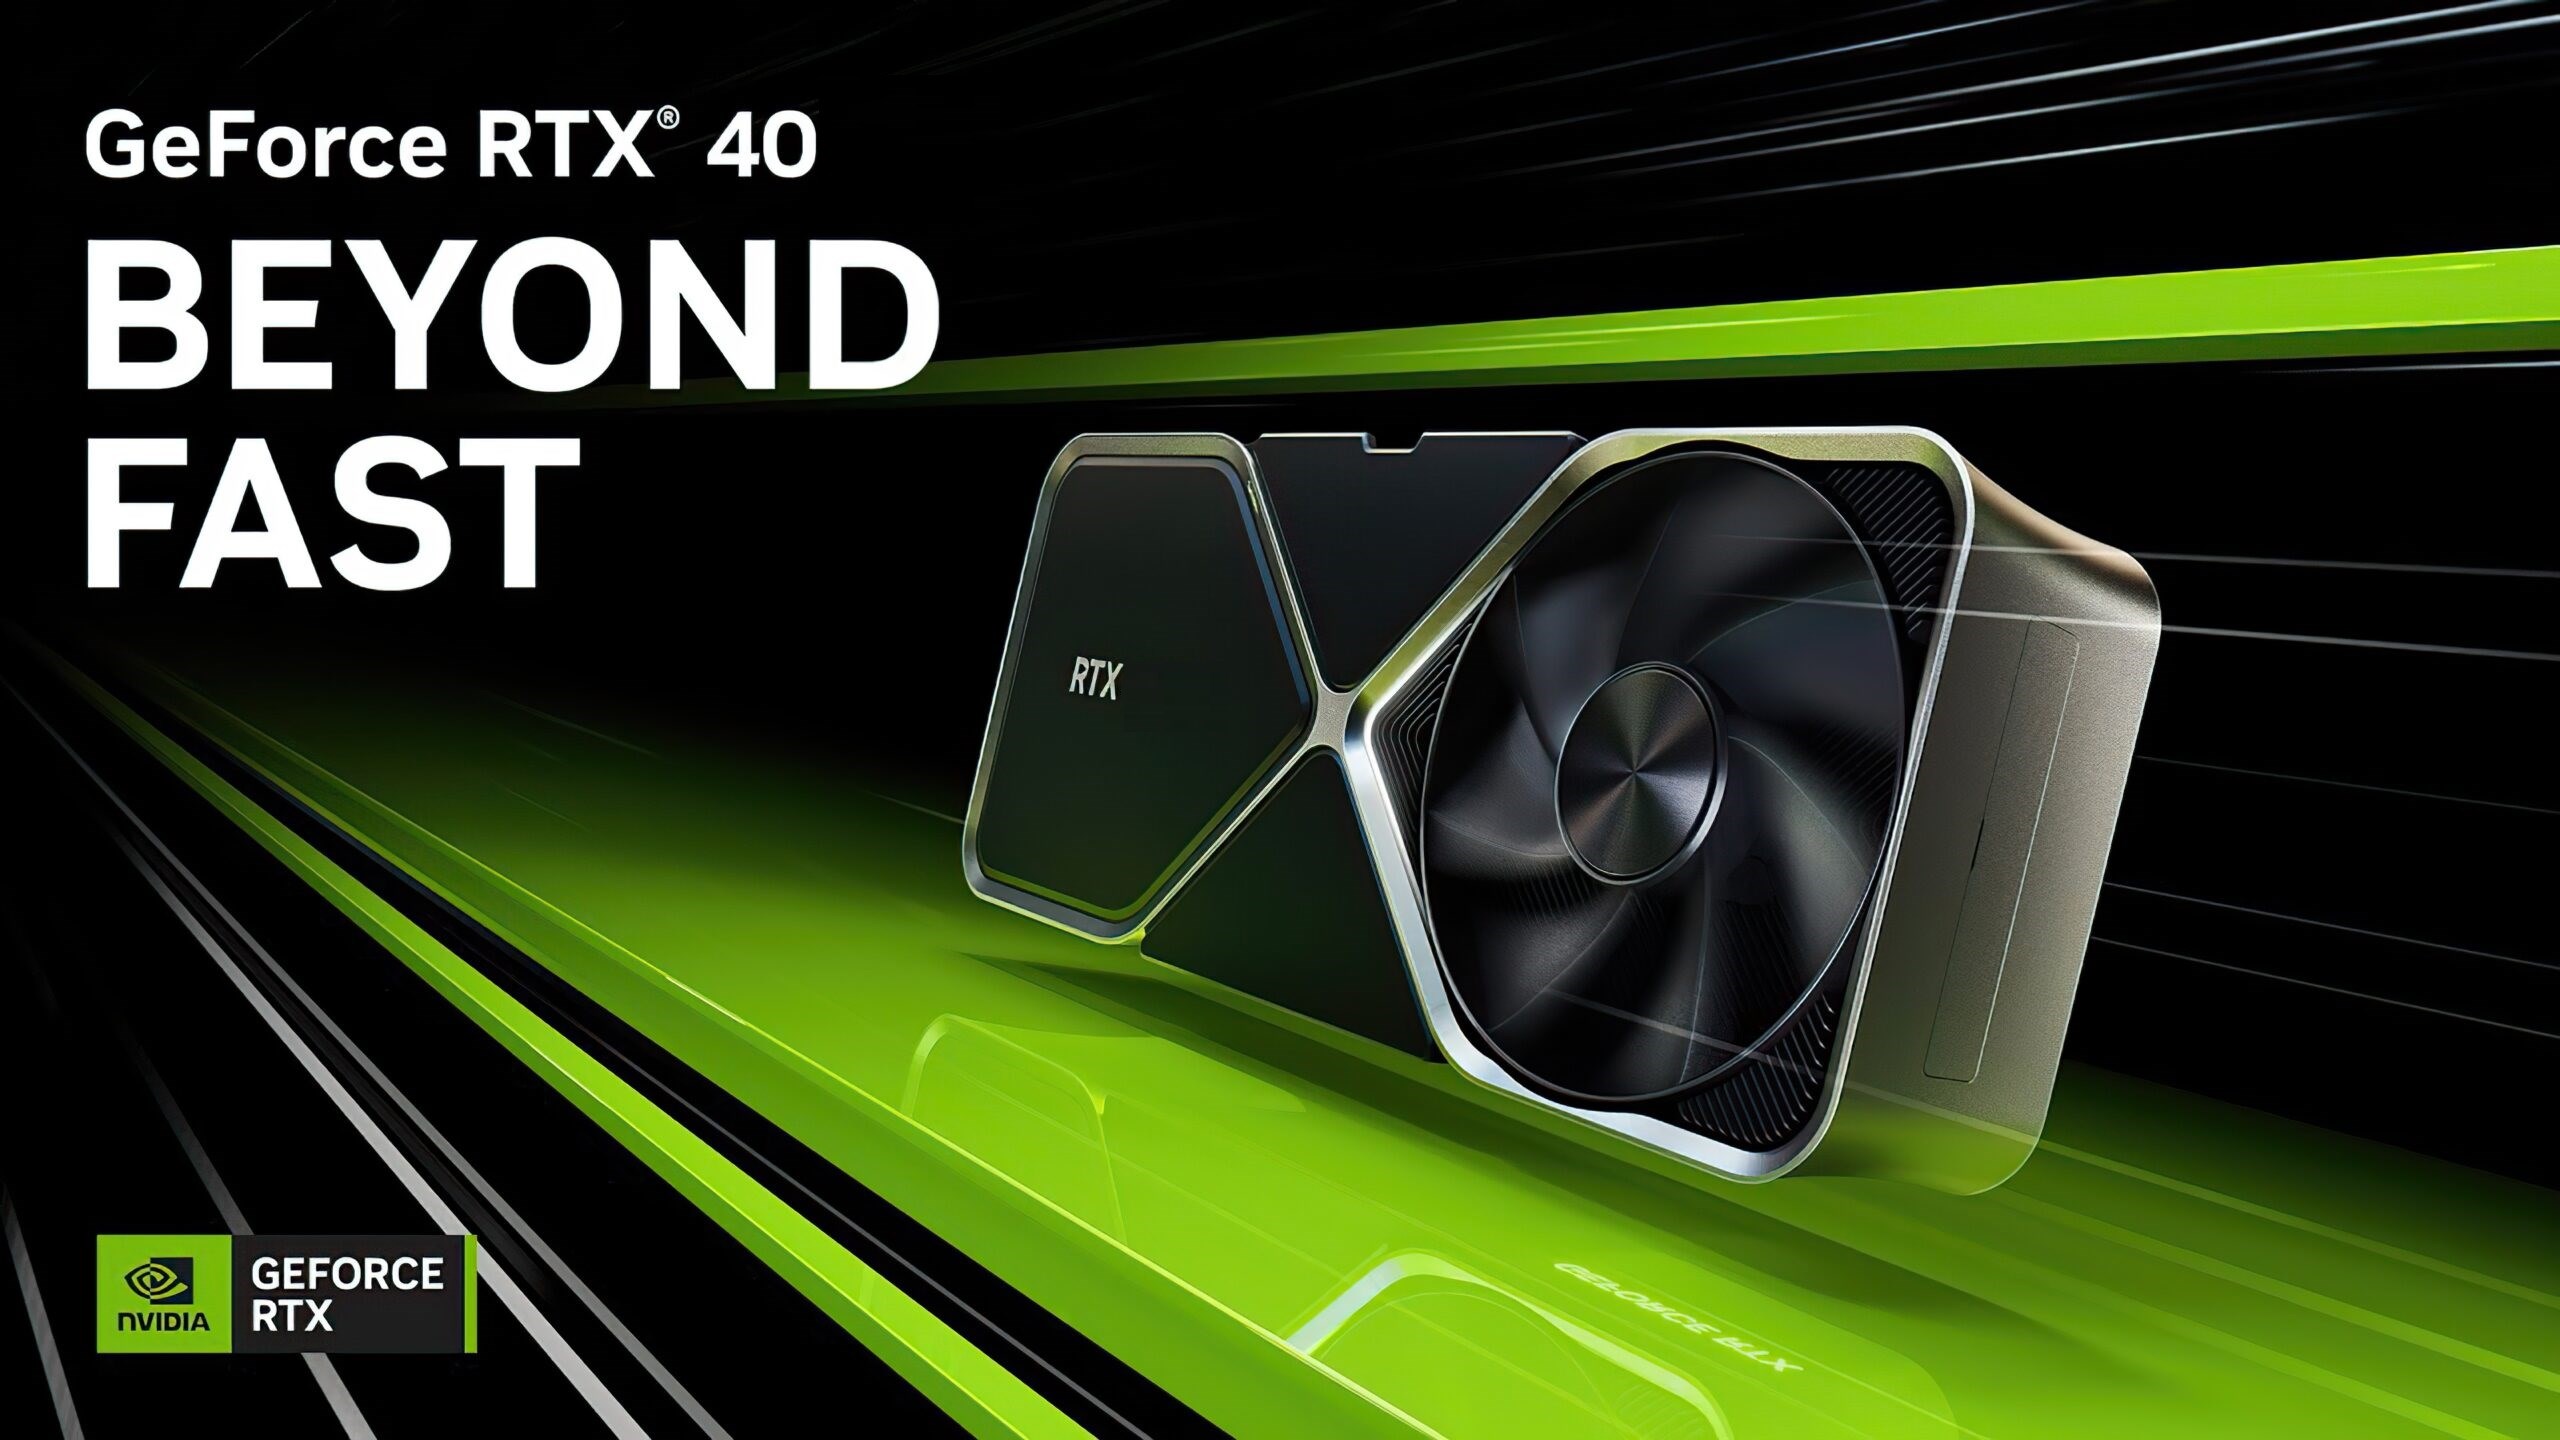 Nvidia GeForce RTX 4070 Ti tanıtıldı: İşte fiyatı ve özellikleri